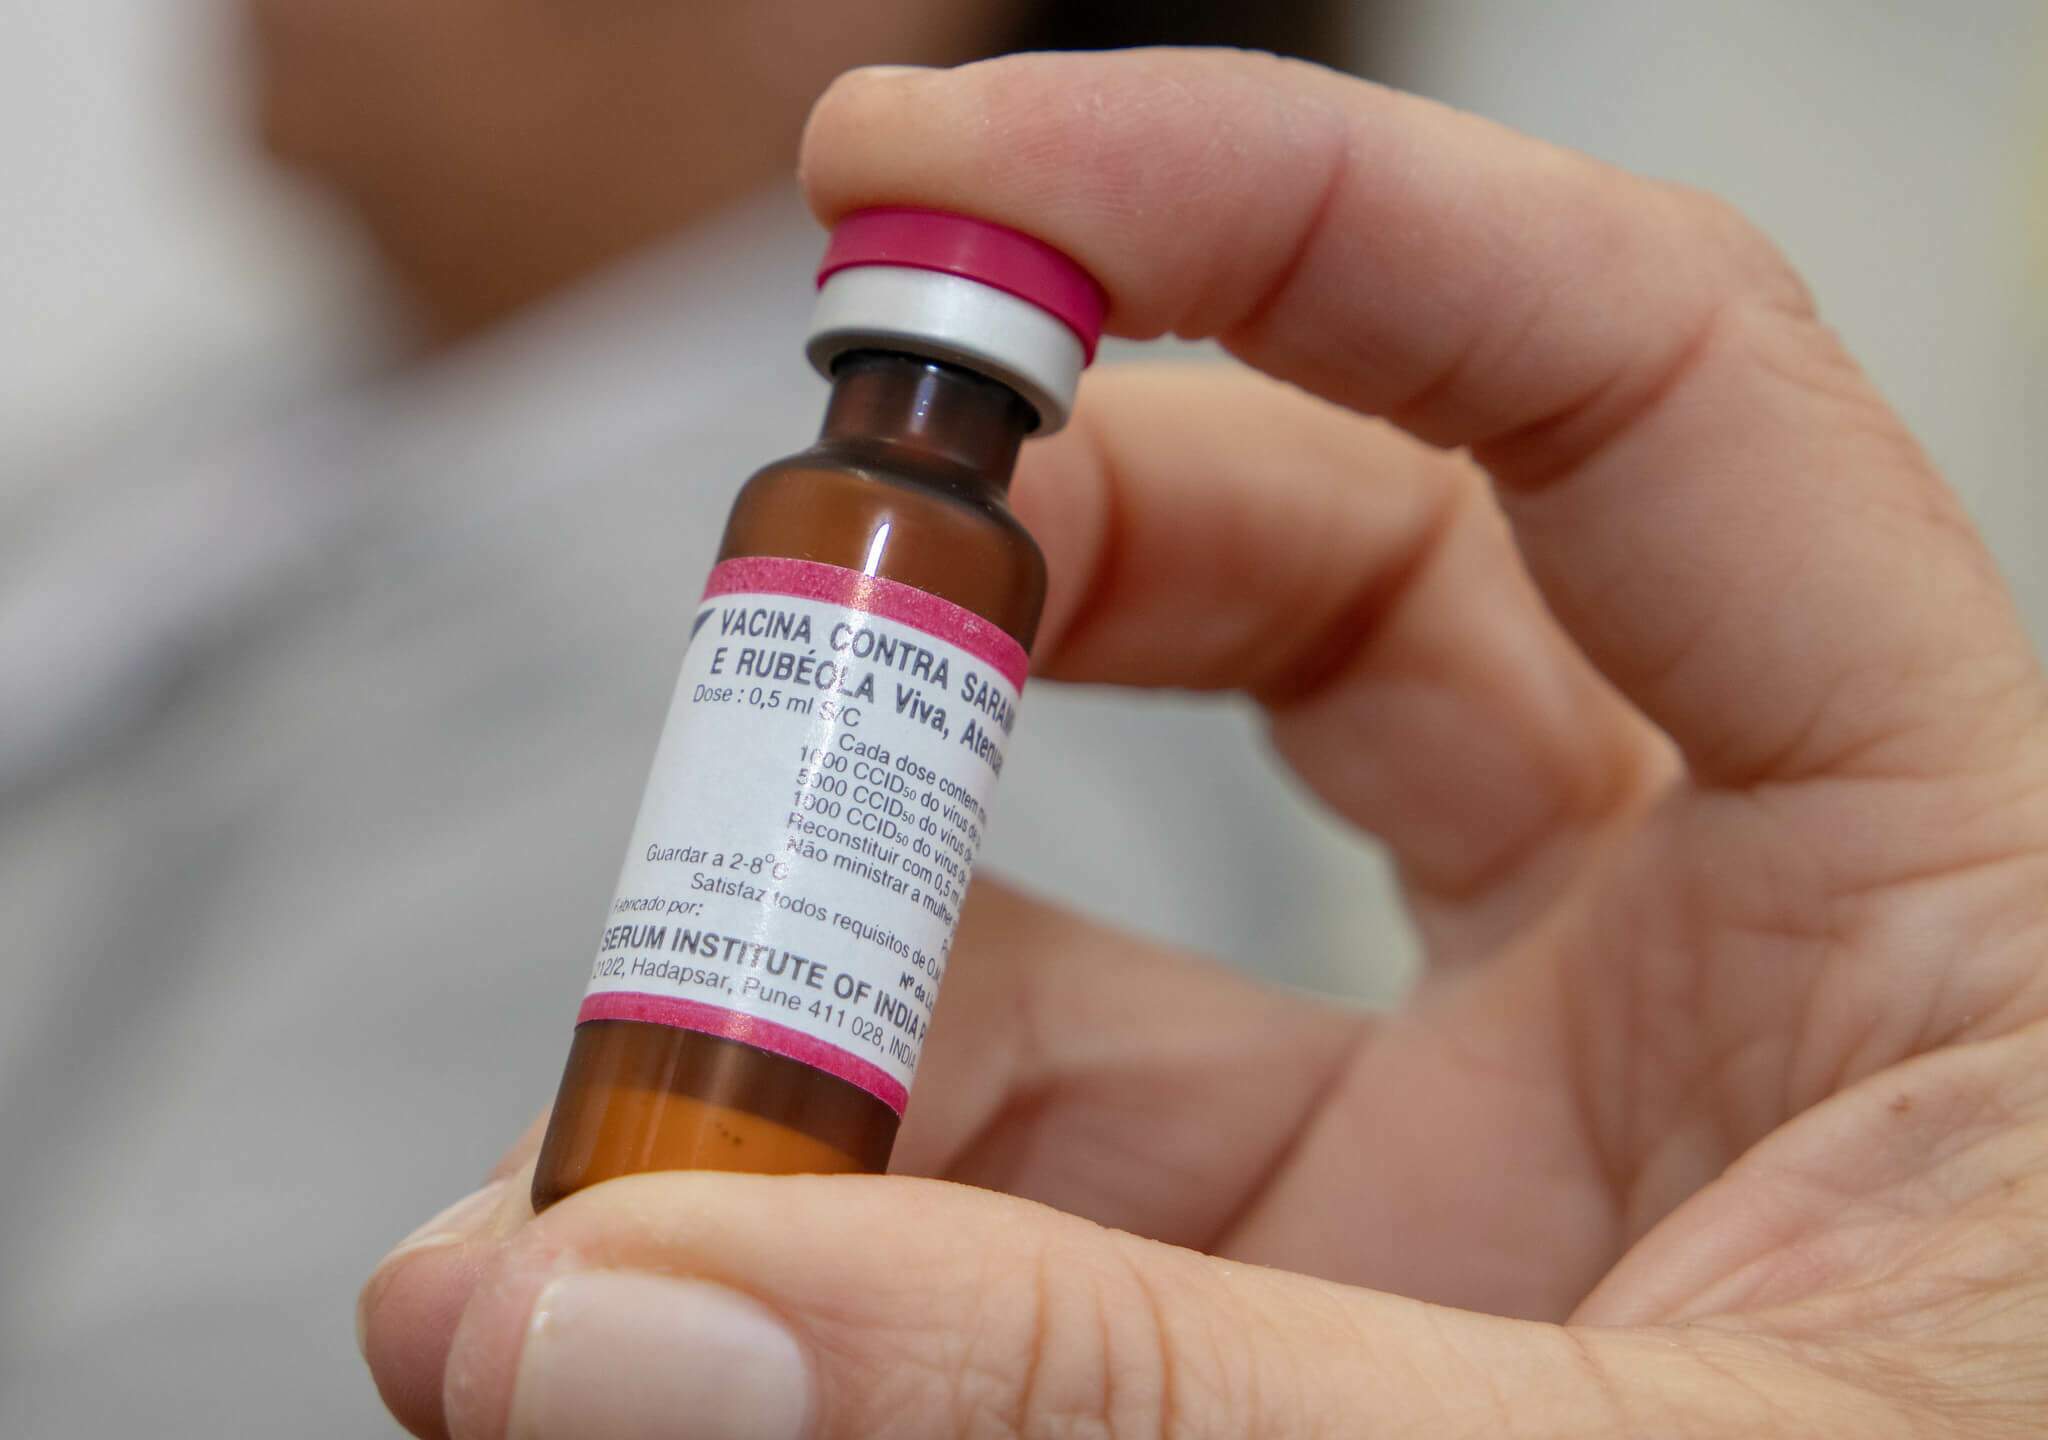 Vacina contra sarampo - fonte: fotos públicas